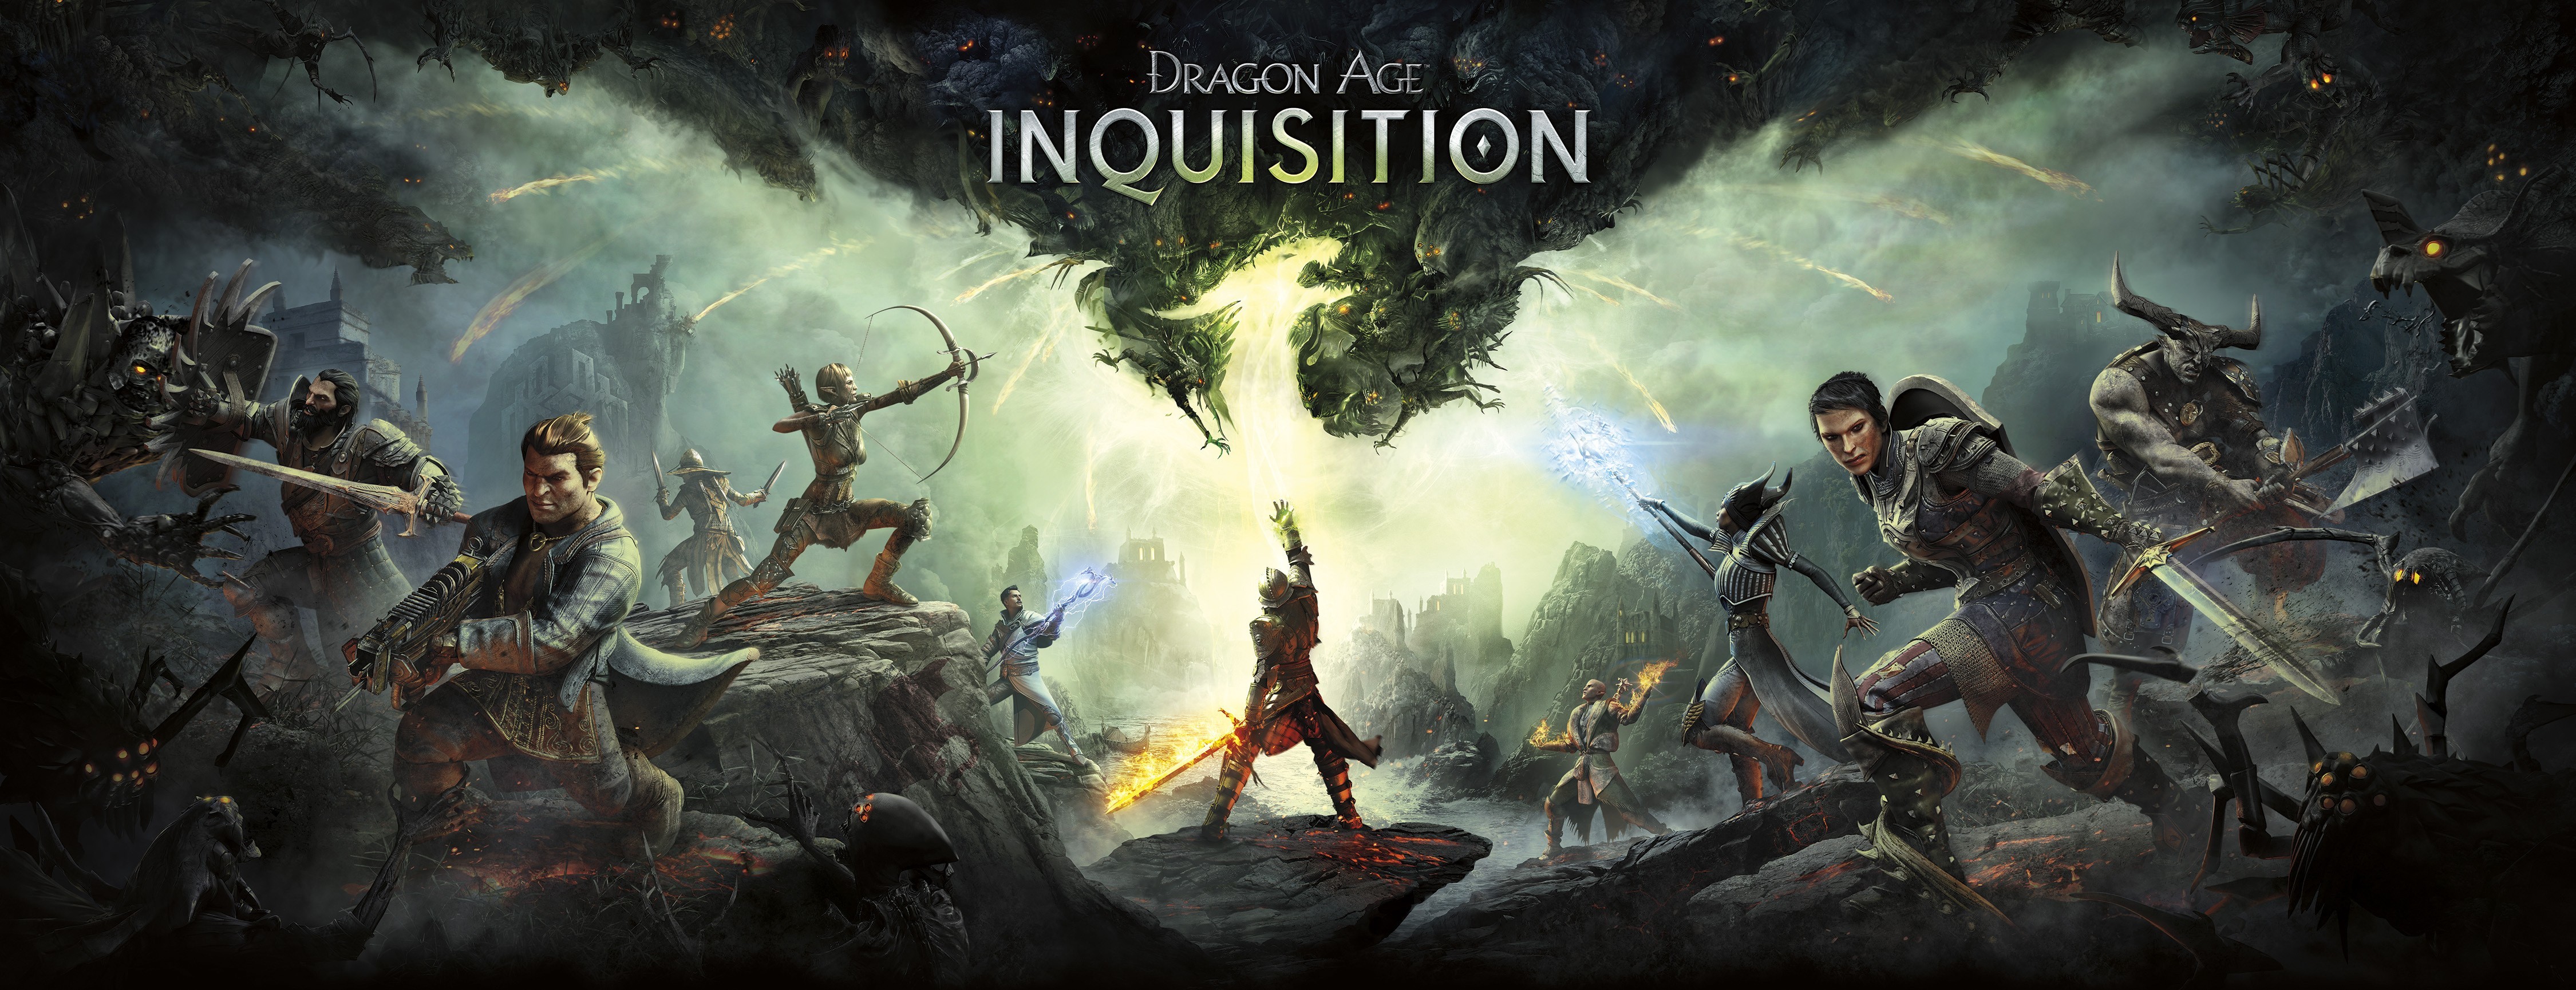 Dragon Age: Inquisition Türkçe Çeviri İçin Bütçe Toplama [Görseller Eklendi] [Hedef : 500 TL]